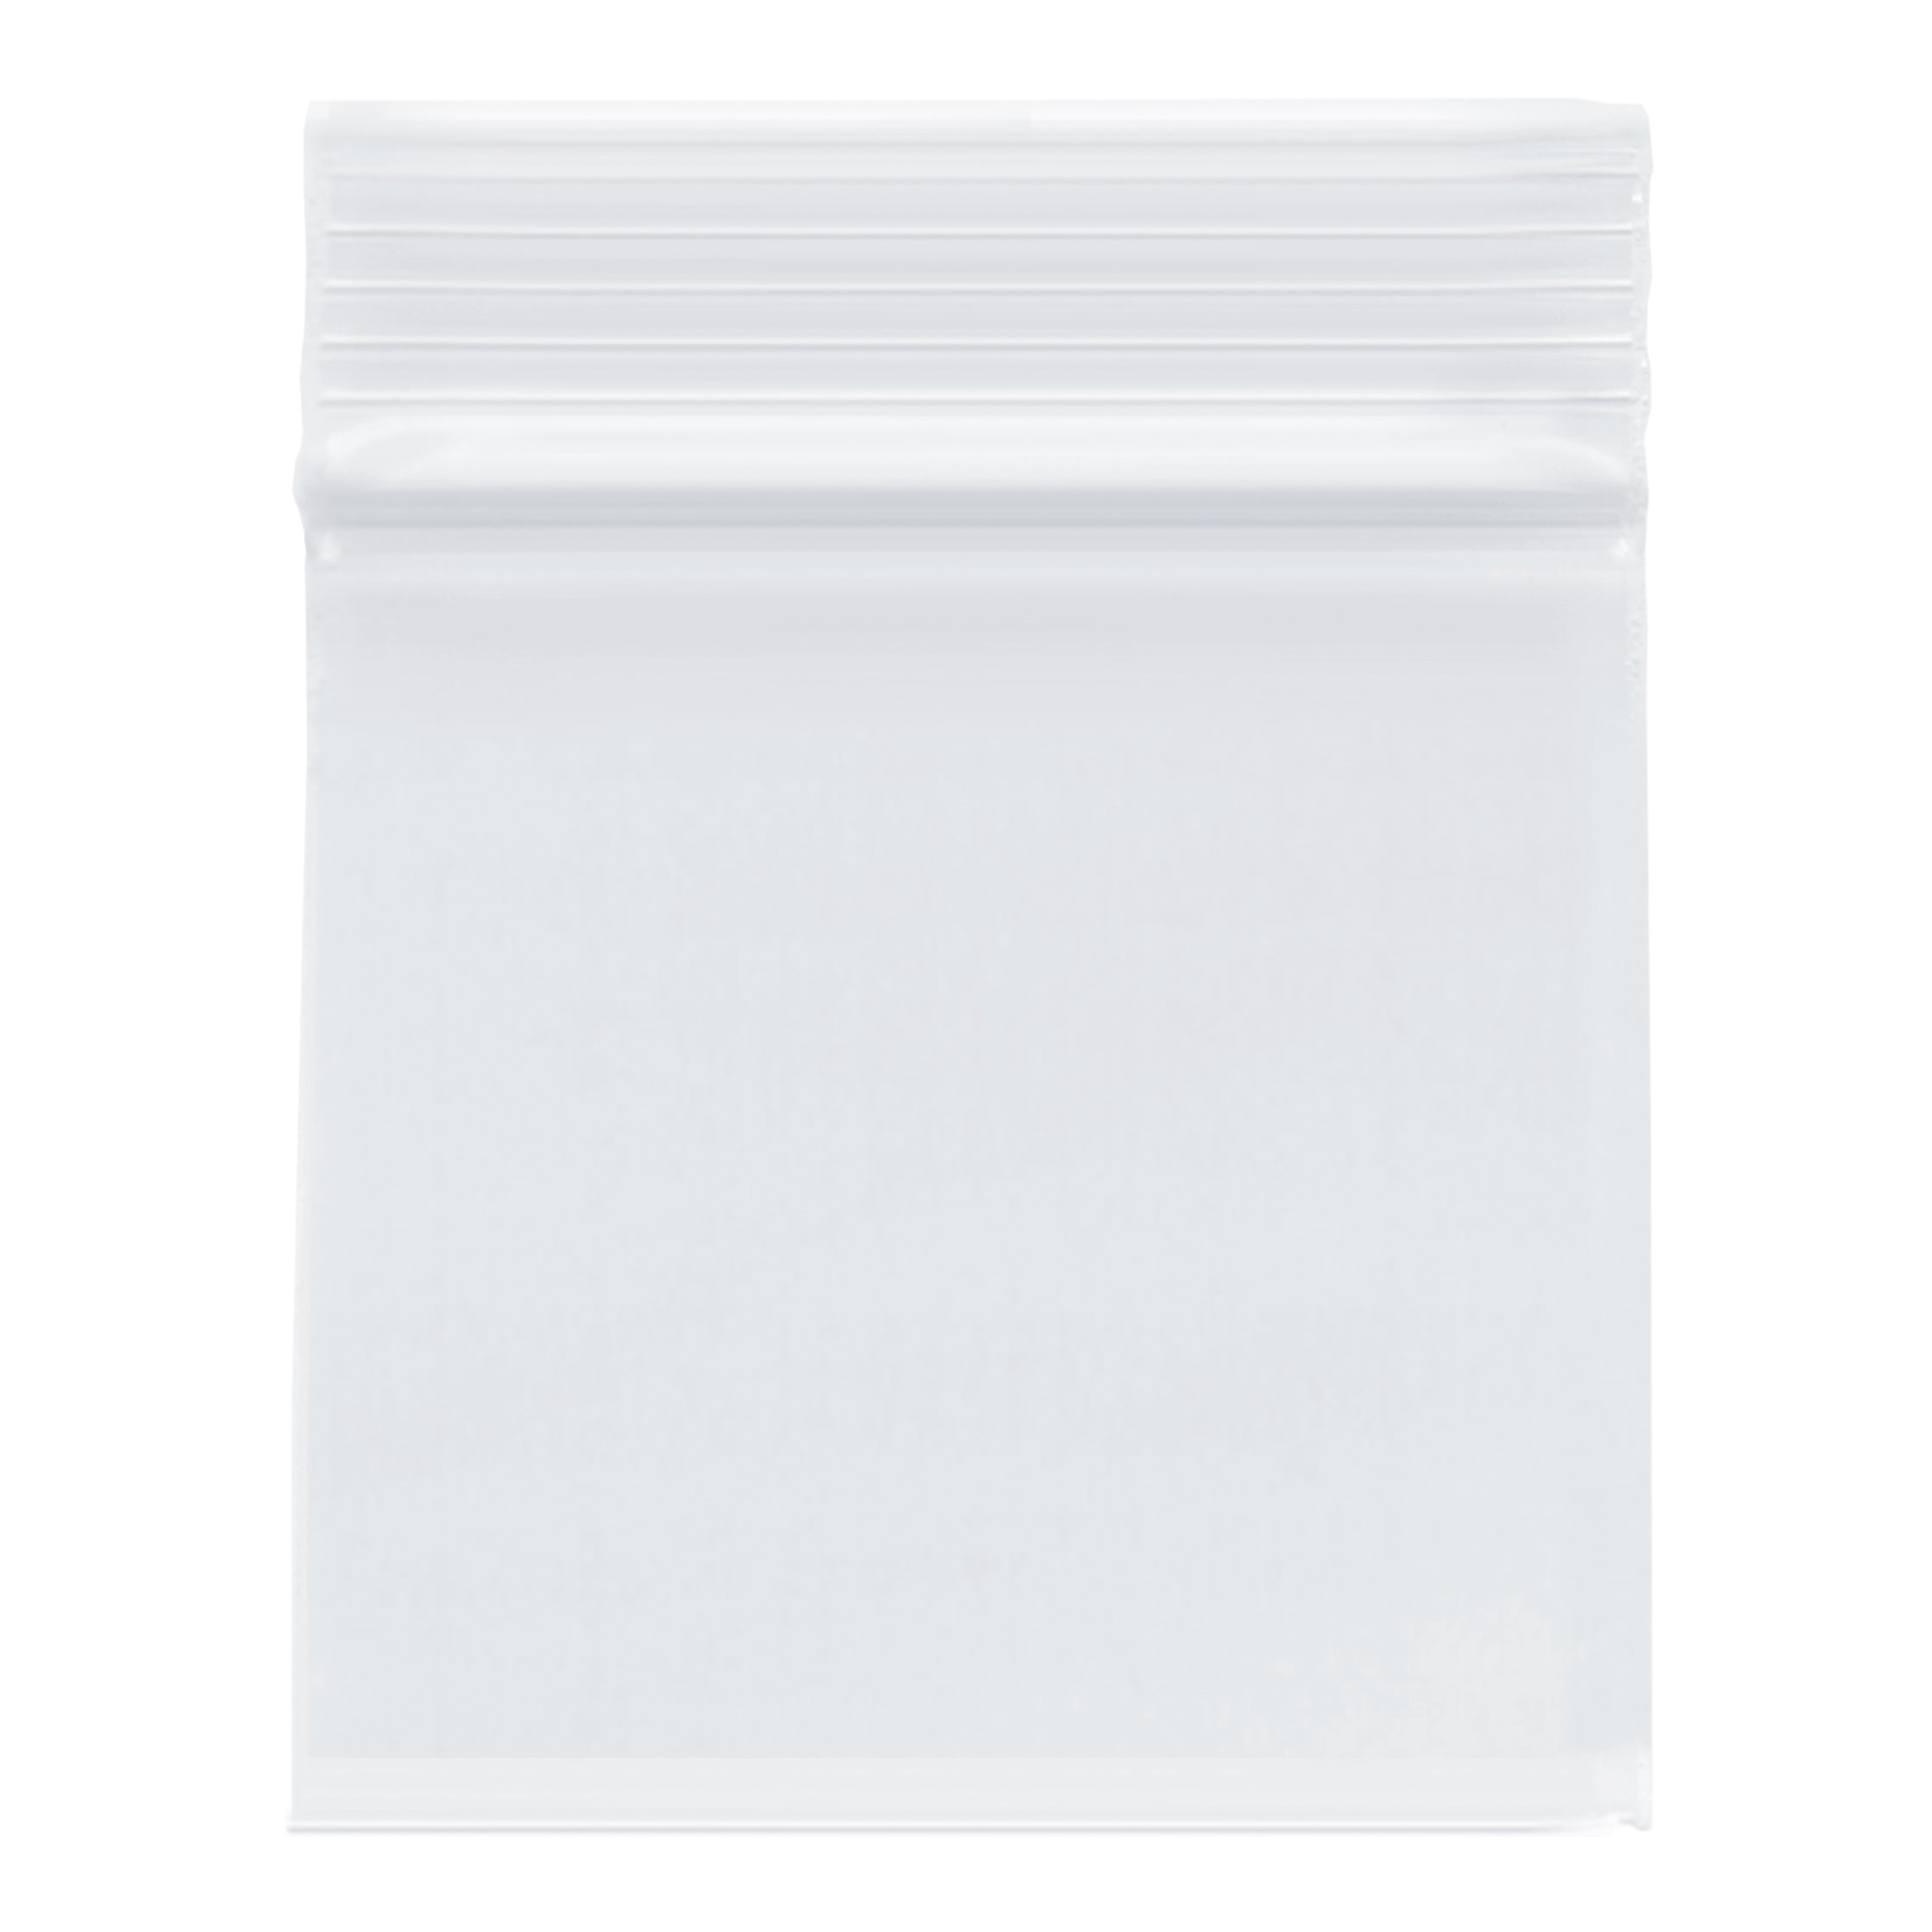 13" x 18" Clear Plastic Zipper Poly Reclosable Bag 2 Mil 13x18 4000 Pcs 